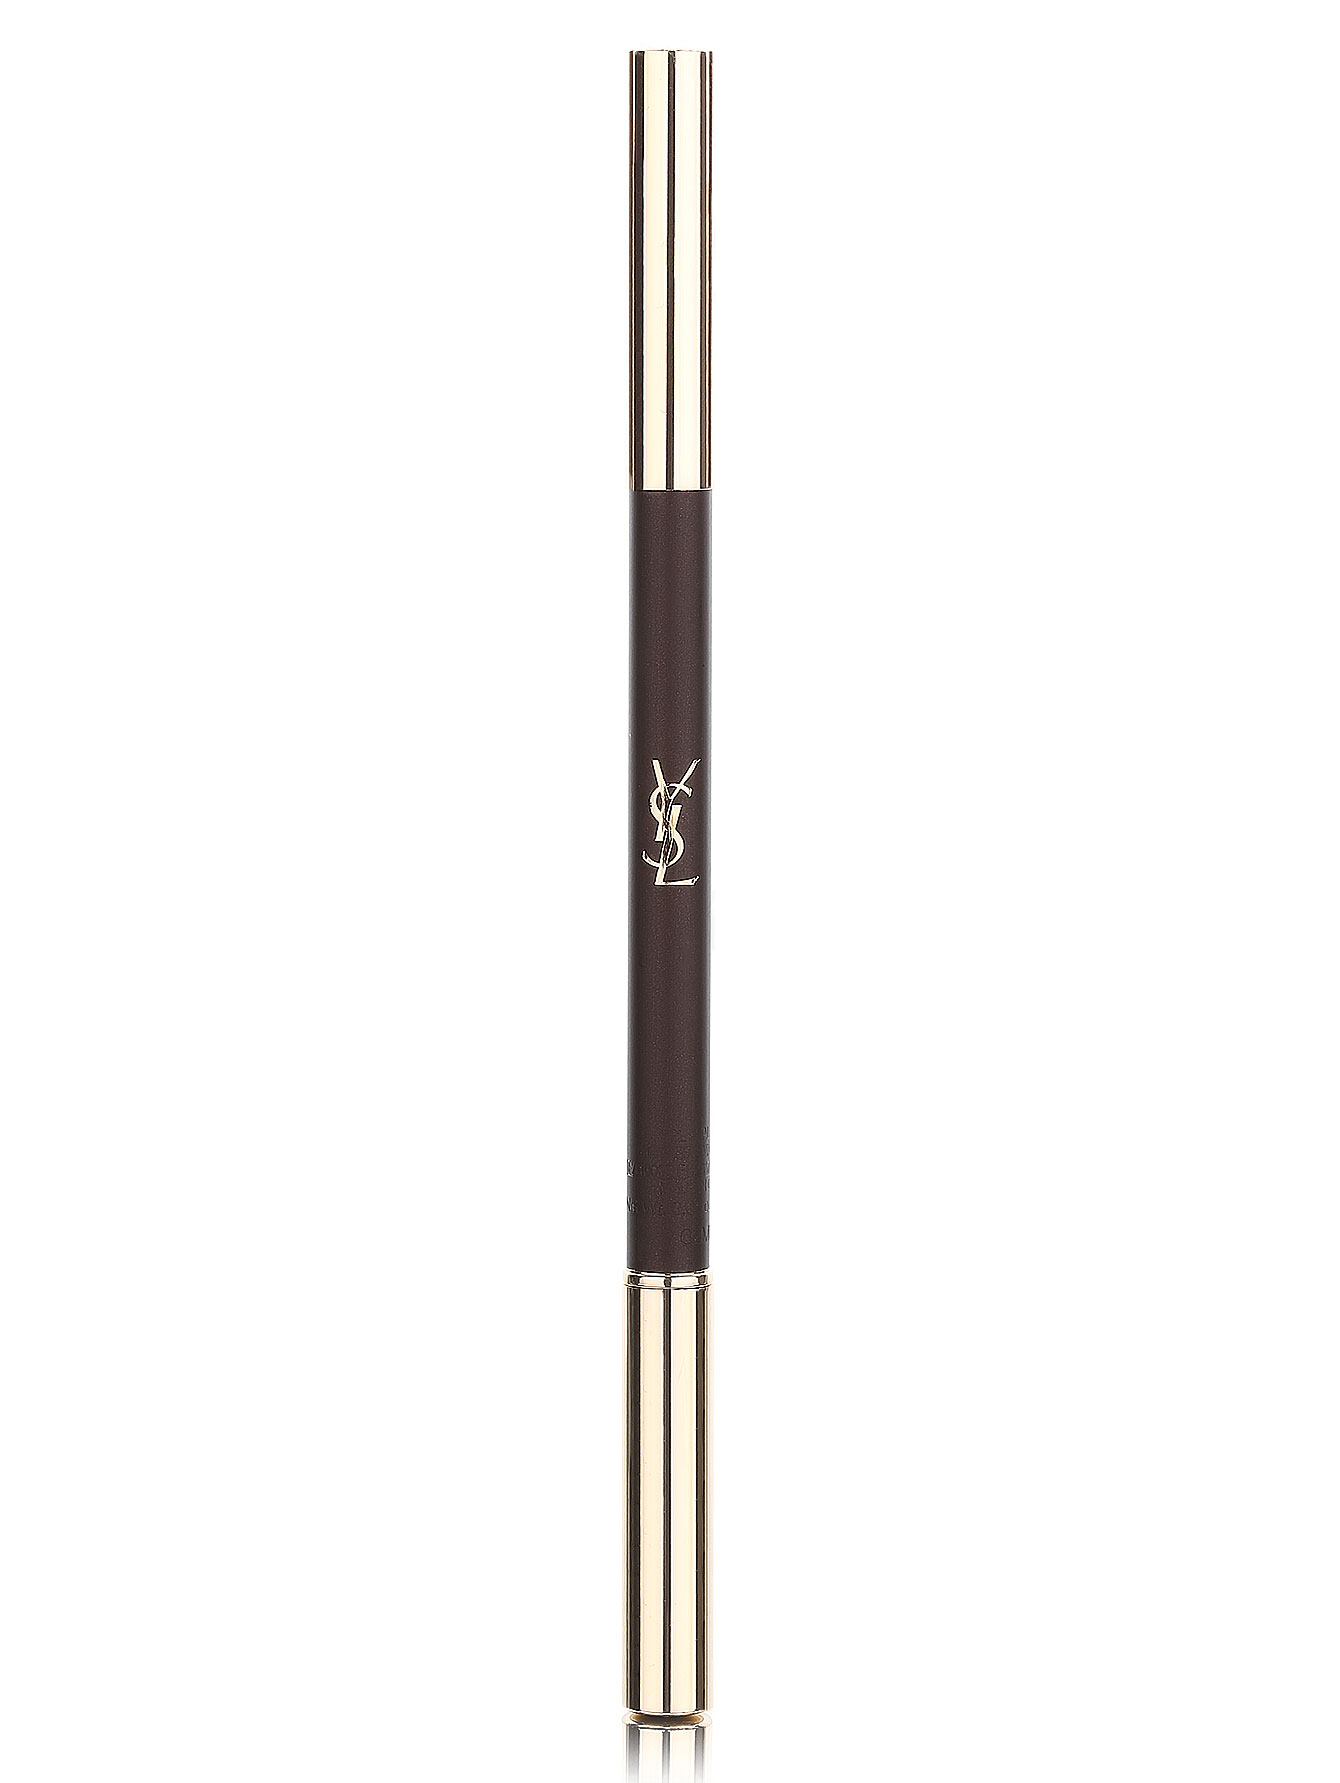 Карандаш для бровей - №2, Eyebrow Pencil - Общий вид